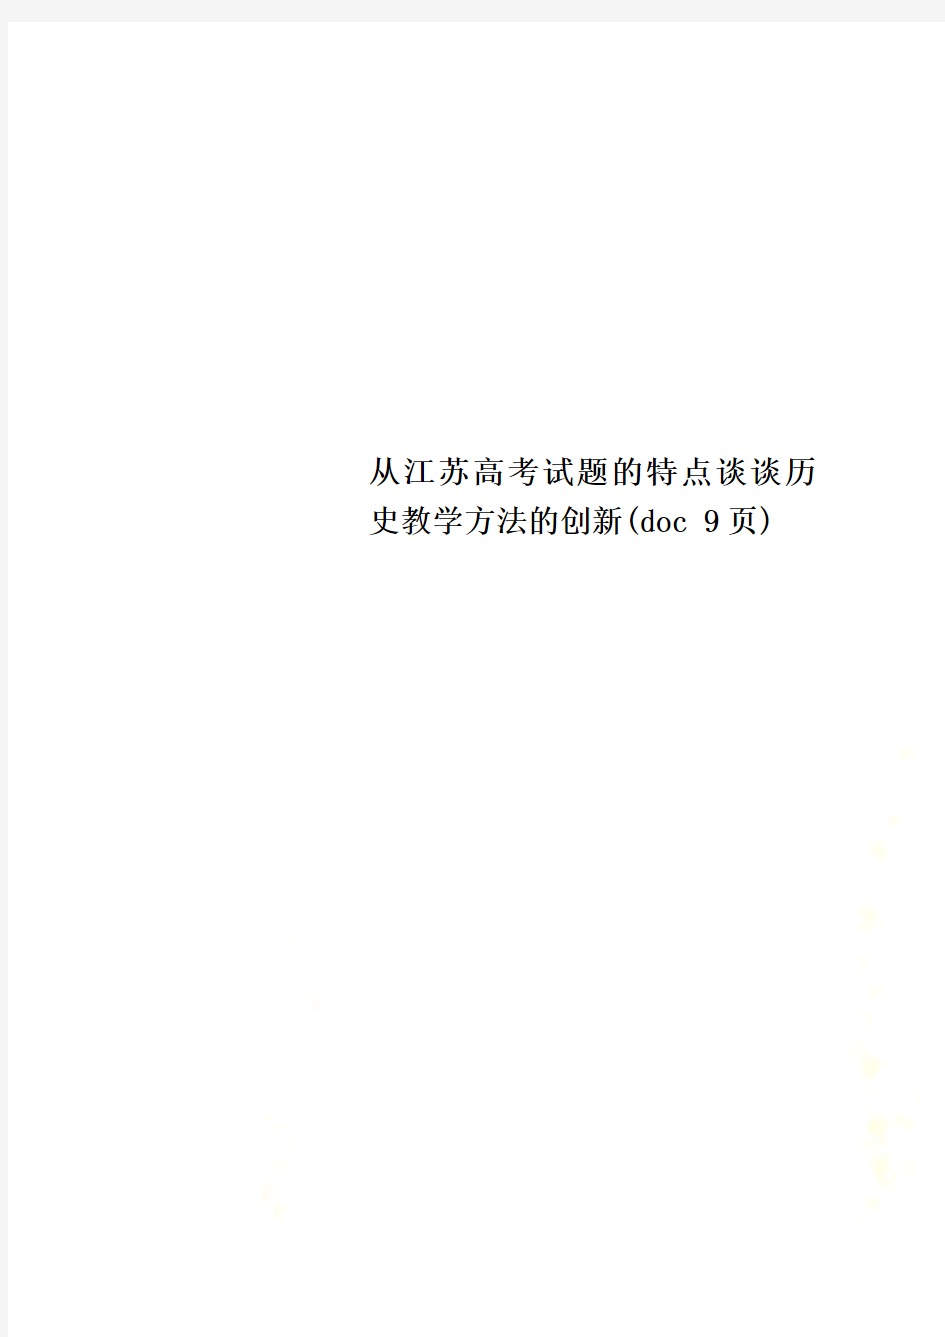 从江苏高考试题的特点谈谈历史教学方法的创新(doc 9页)